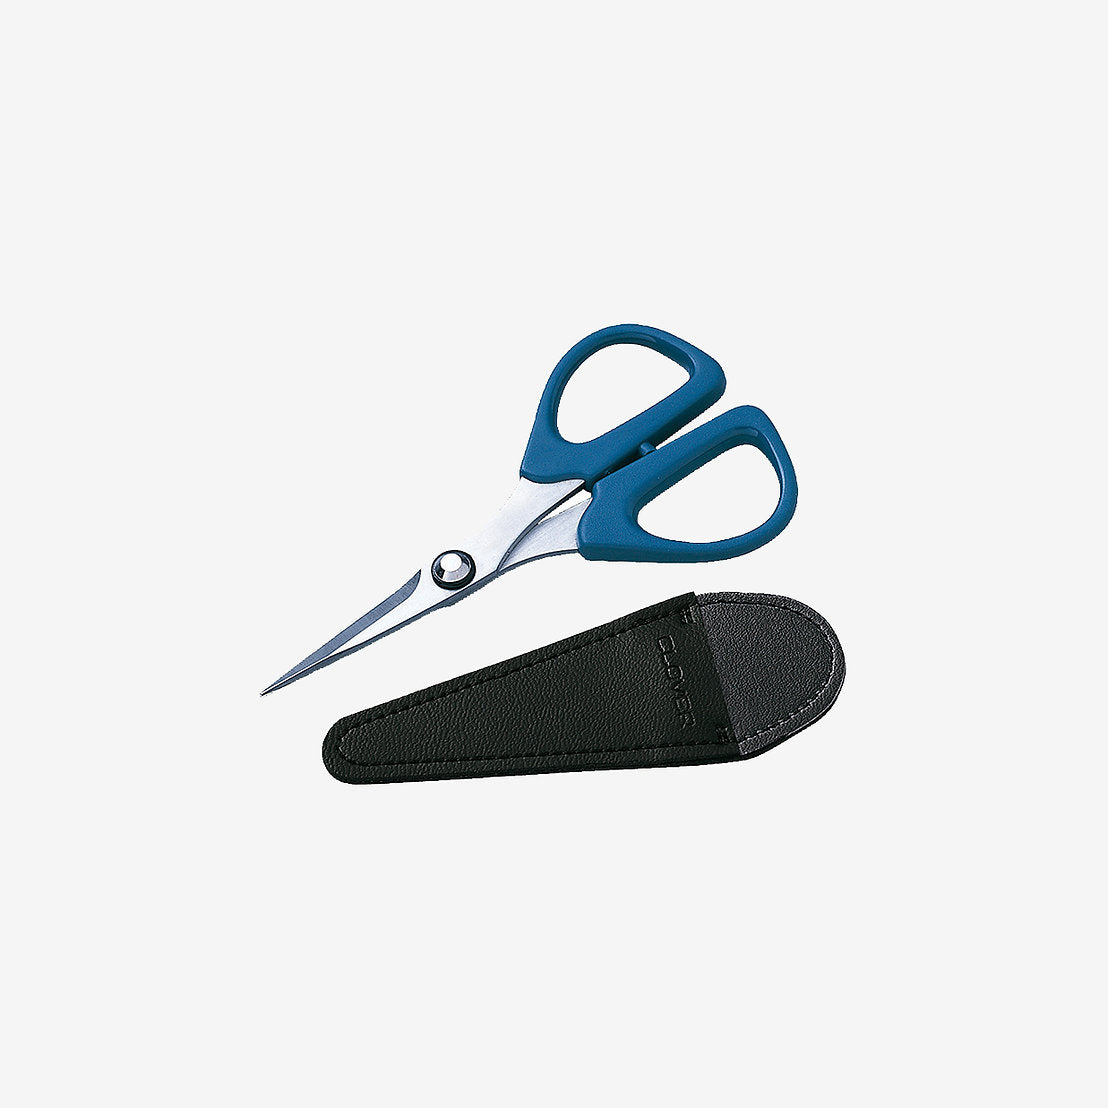 11.5 cm Patchwork Scissors MINI Clover 493/CW